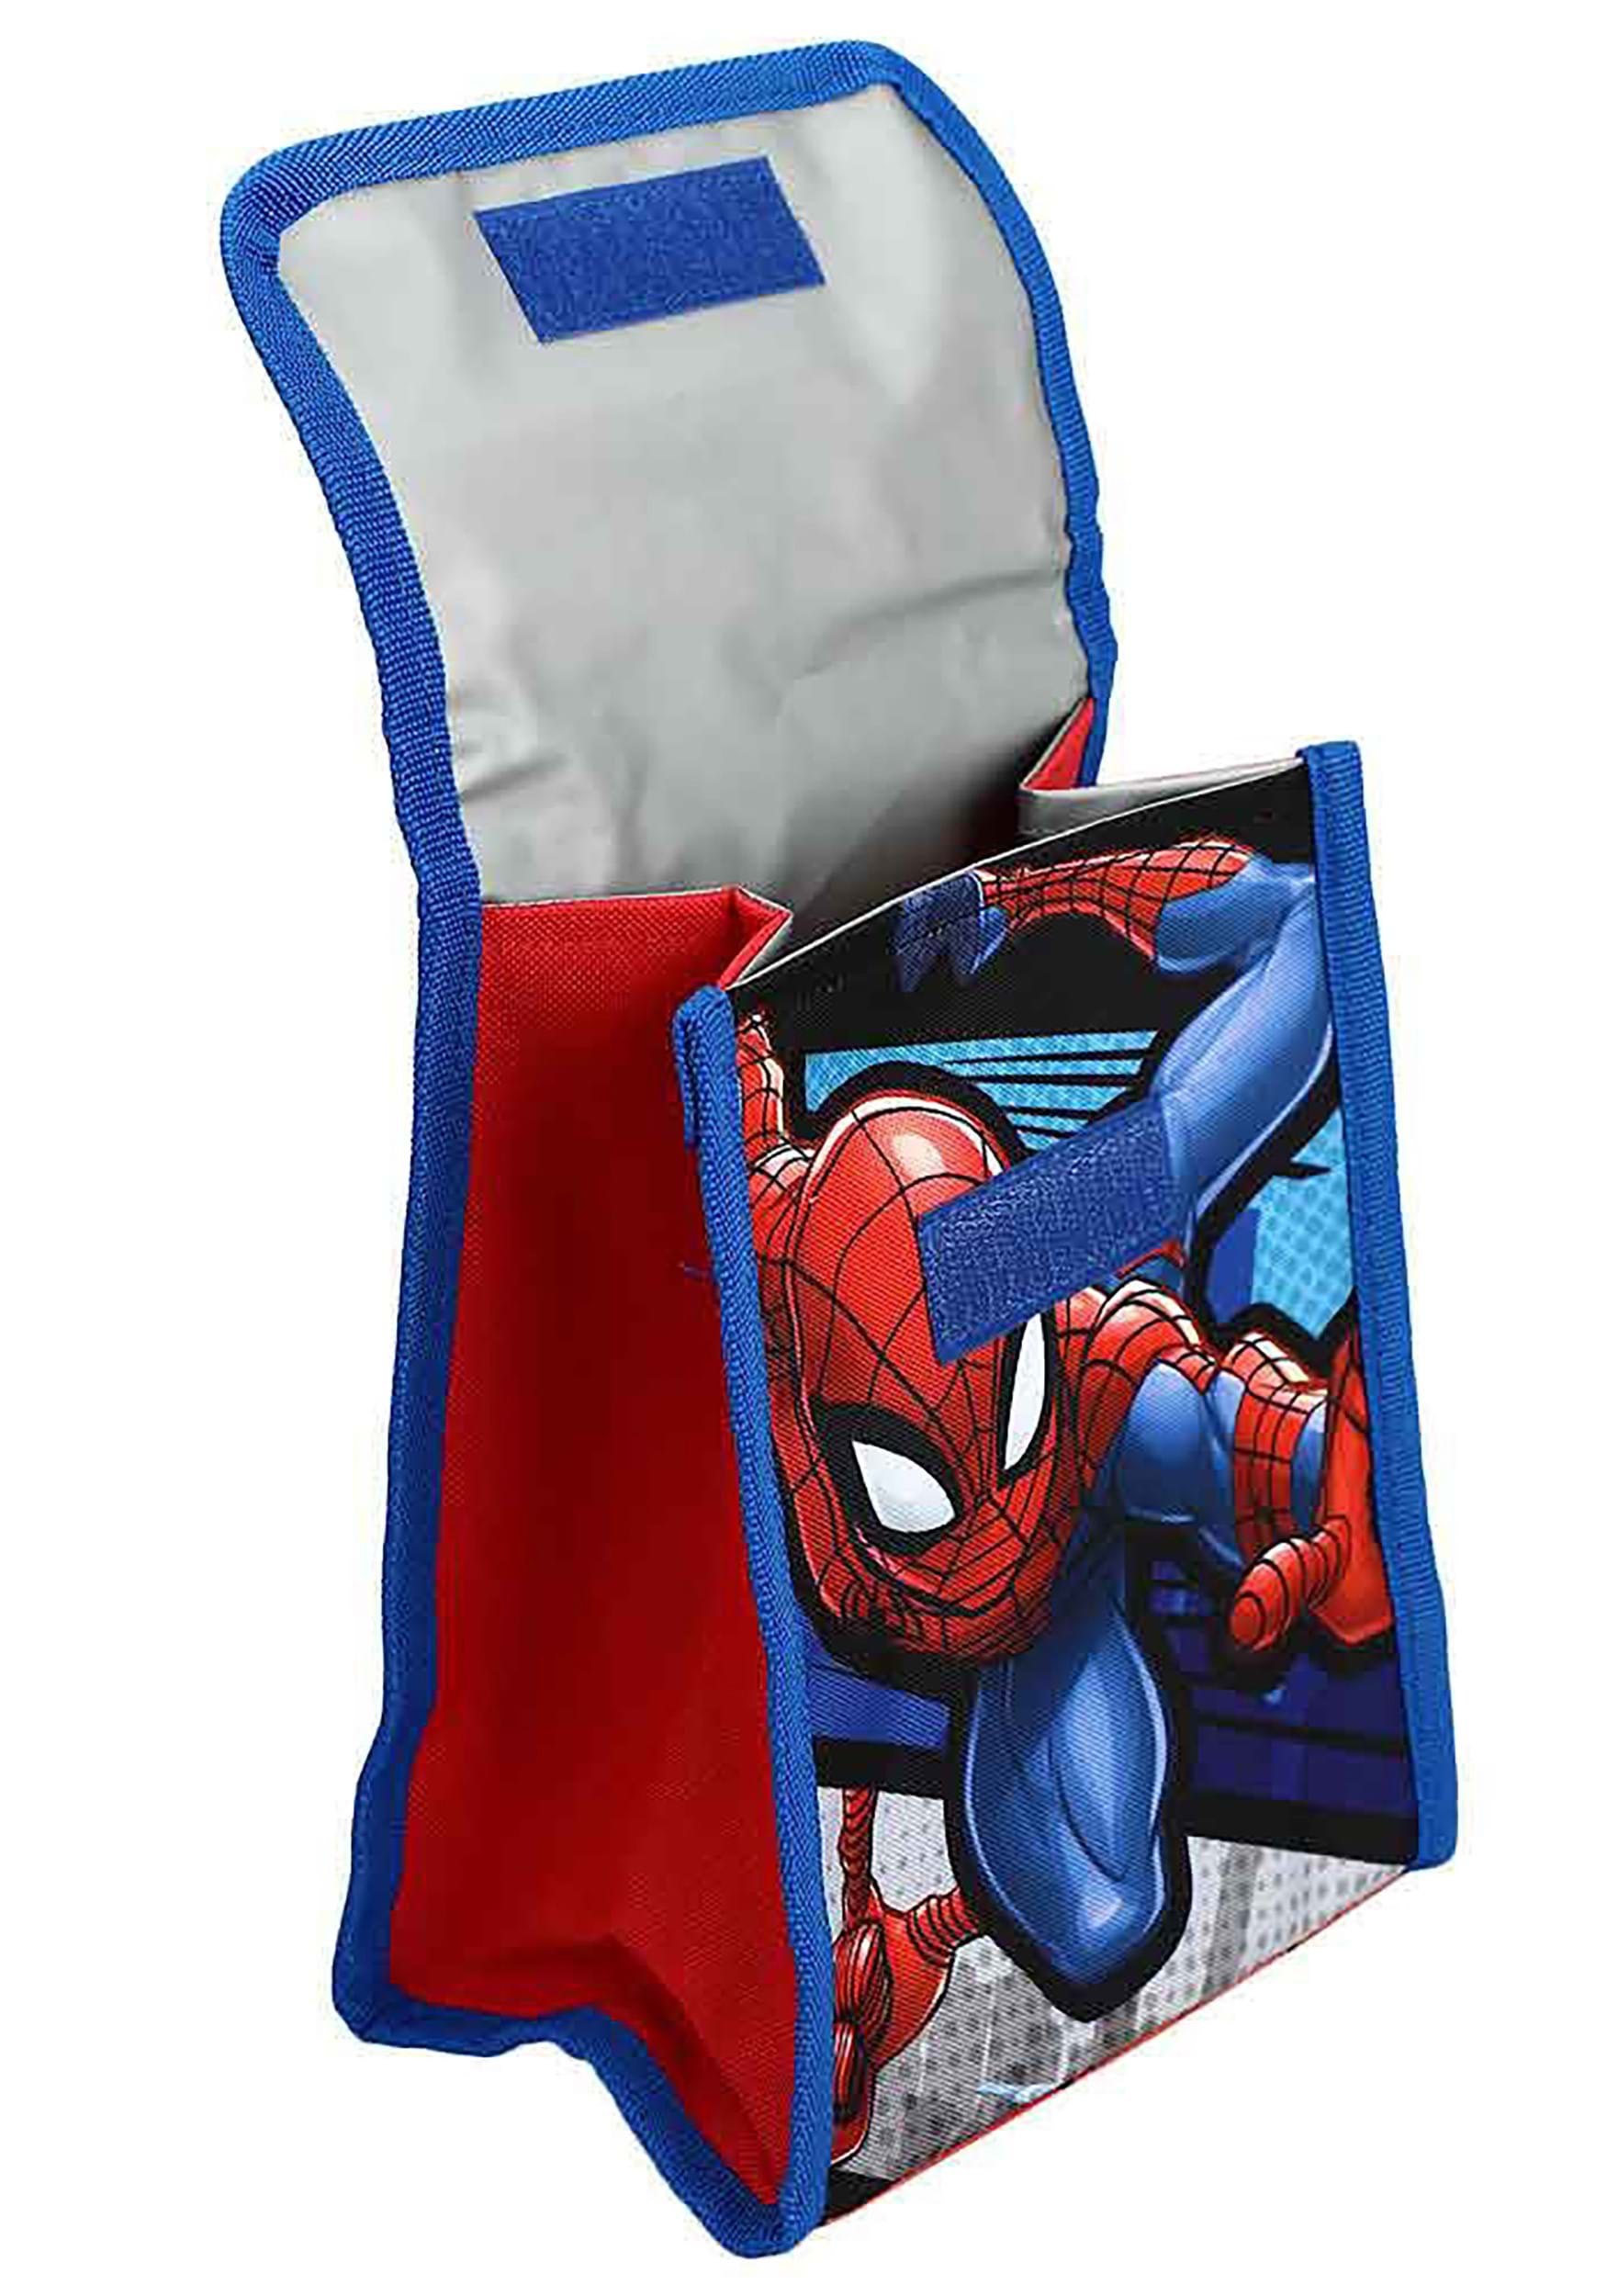 https://images.fun.com/products/86230/2-1-234888/marvel-spider-man-6-piece-backpack-set-alt-8.jpg